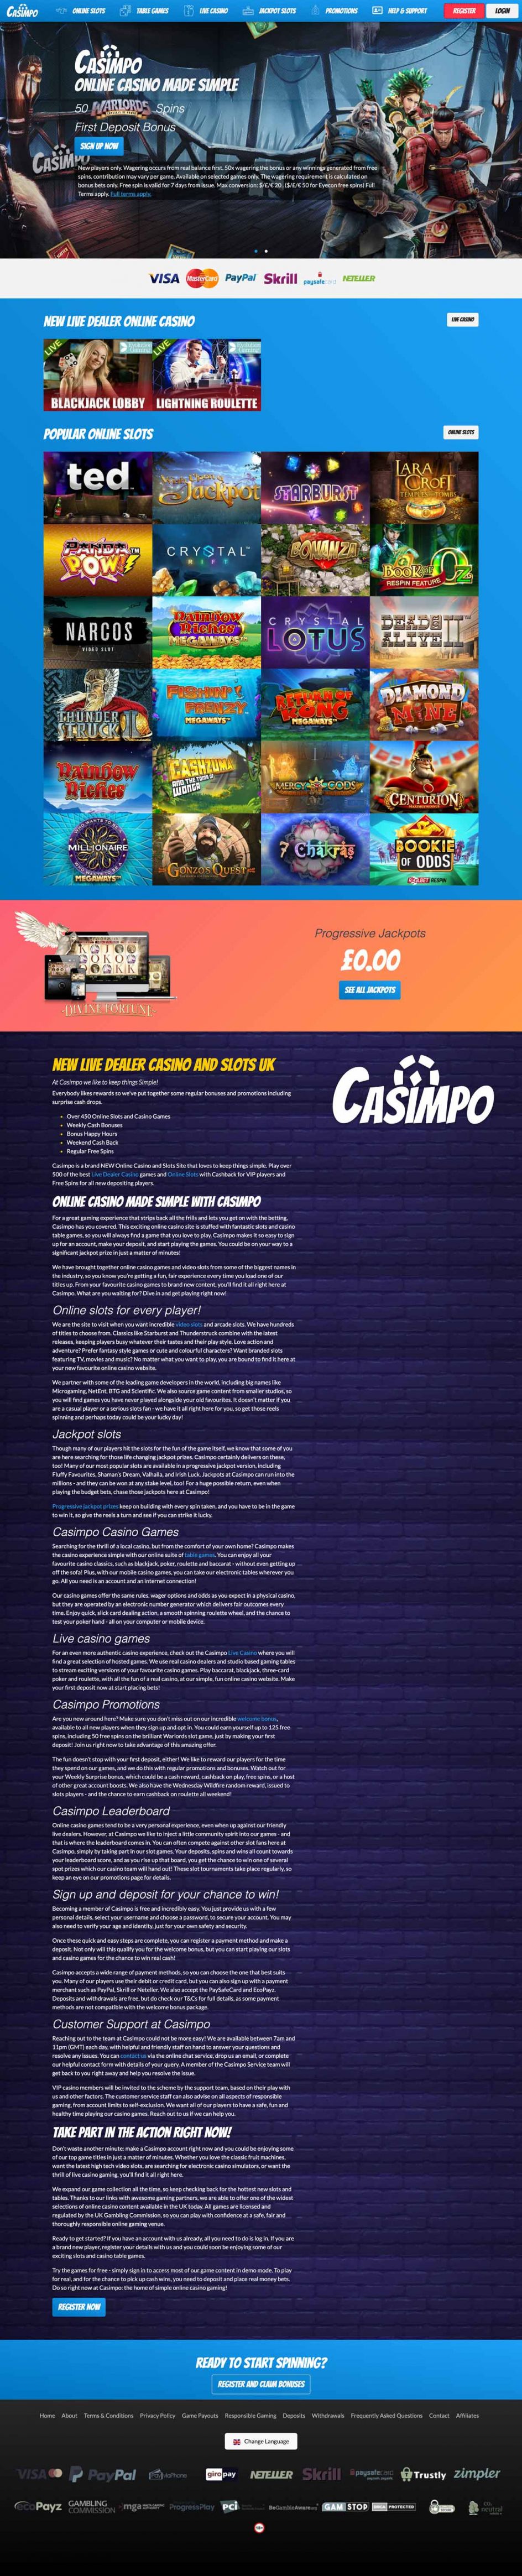 Casimpo Casino Design